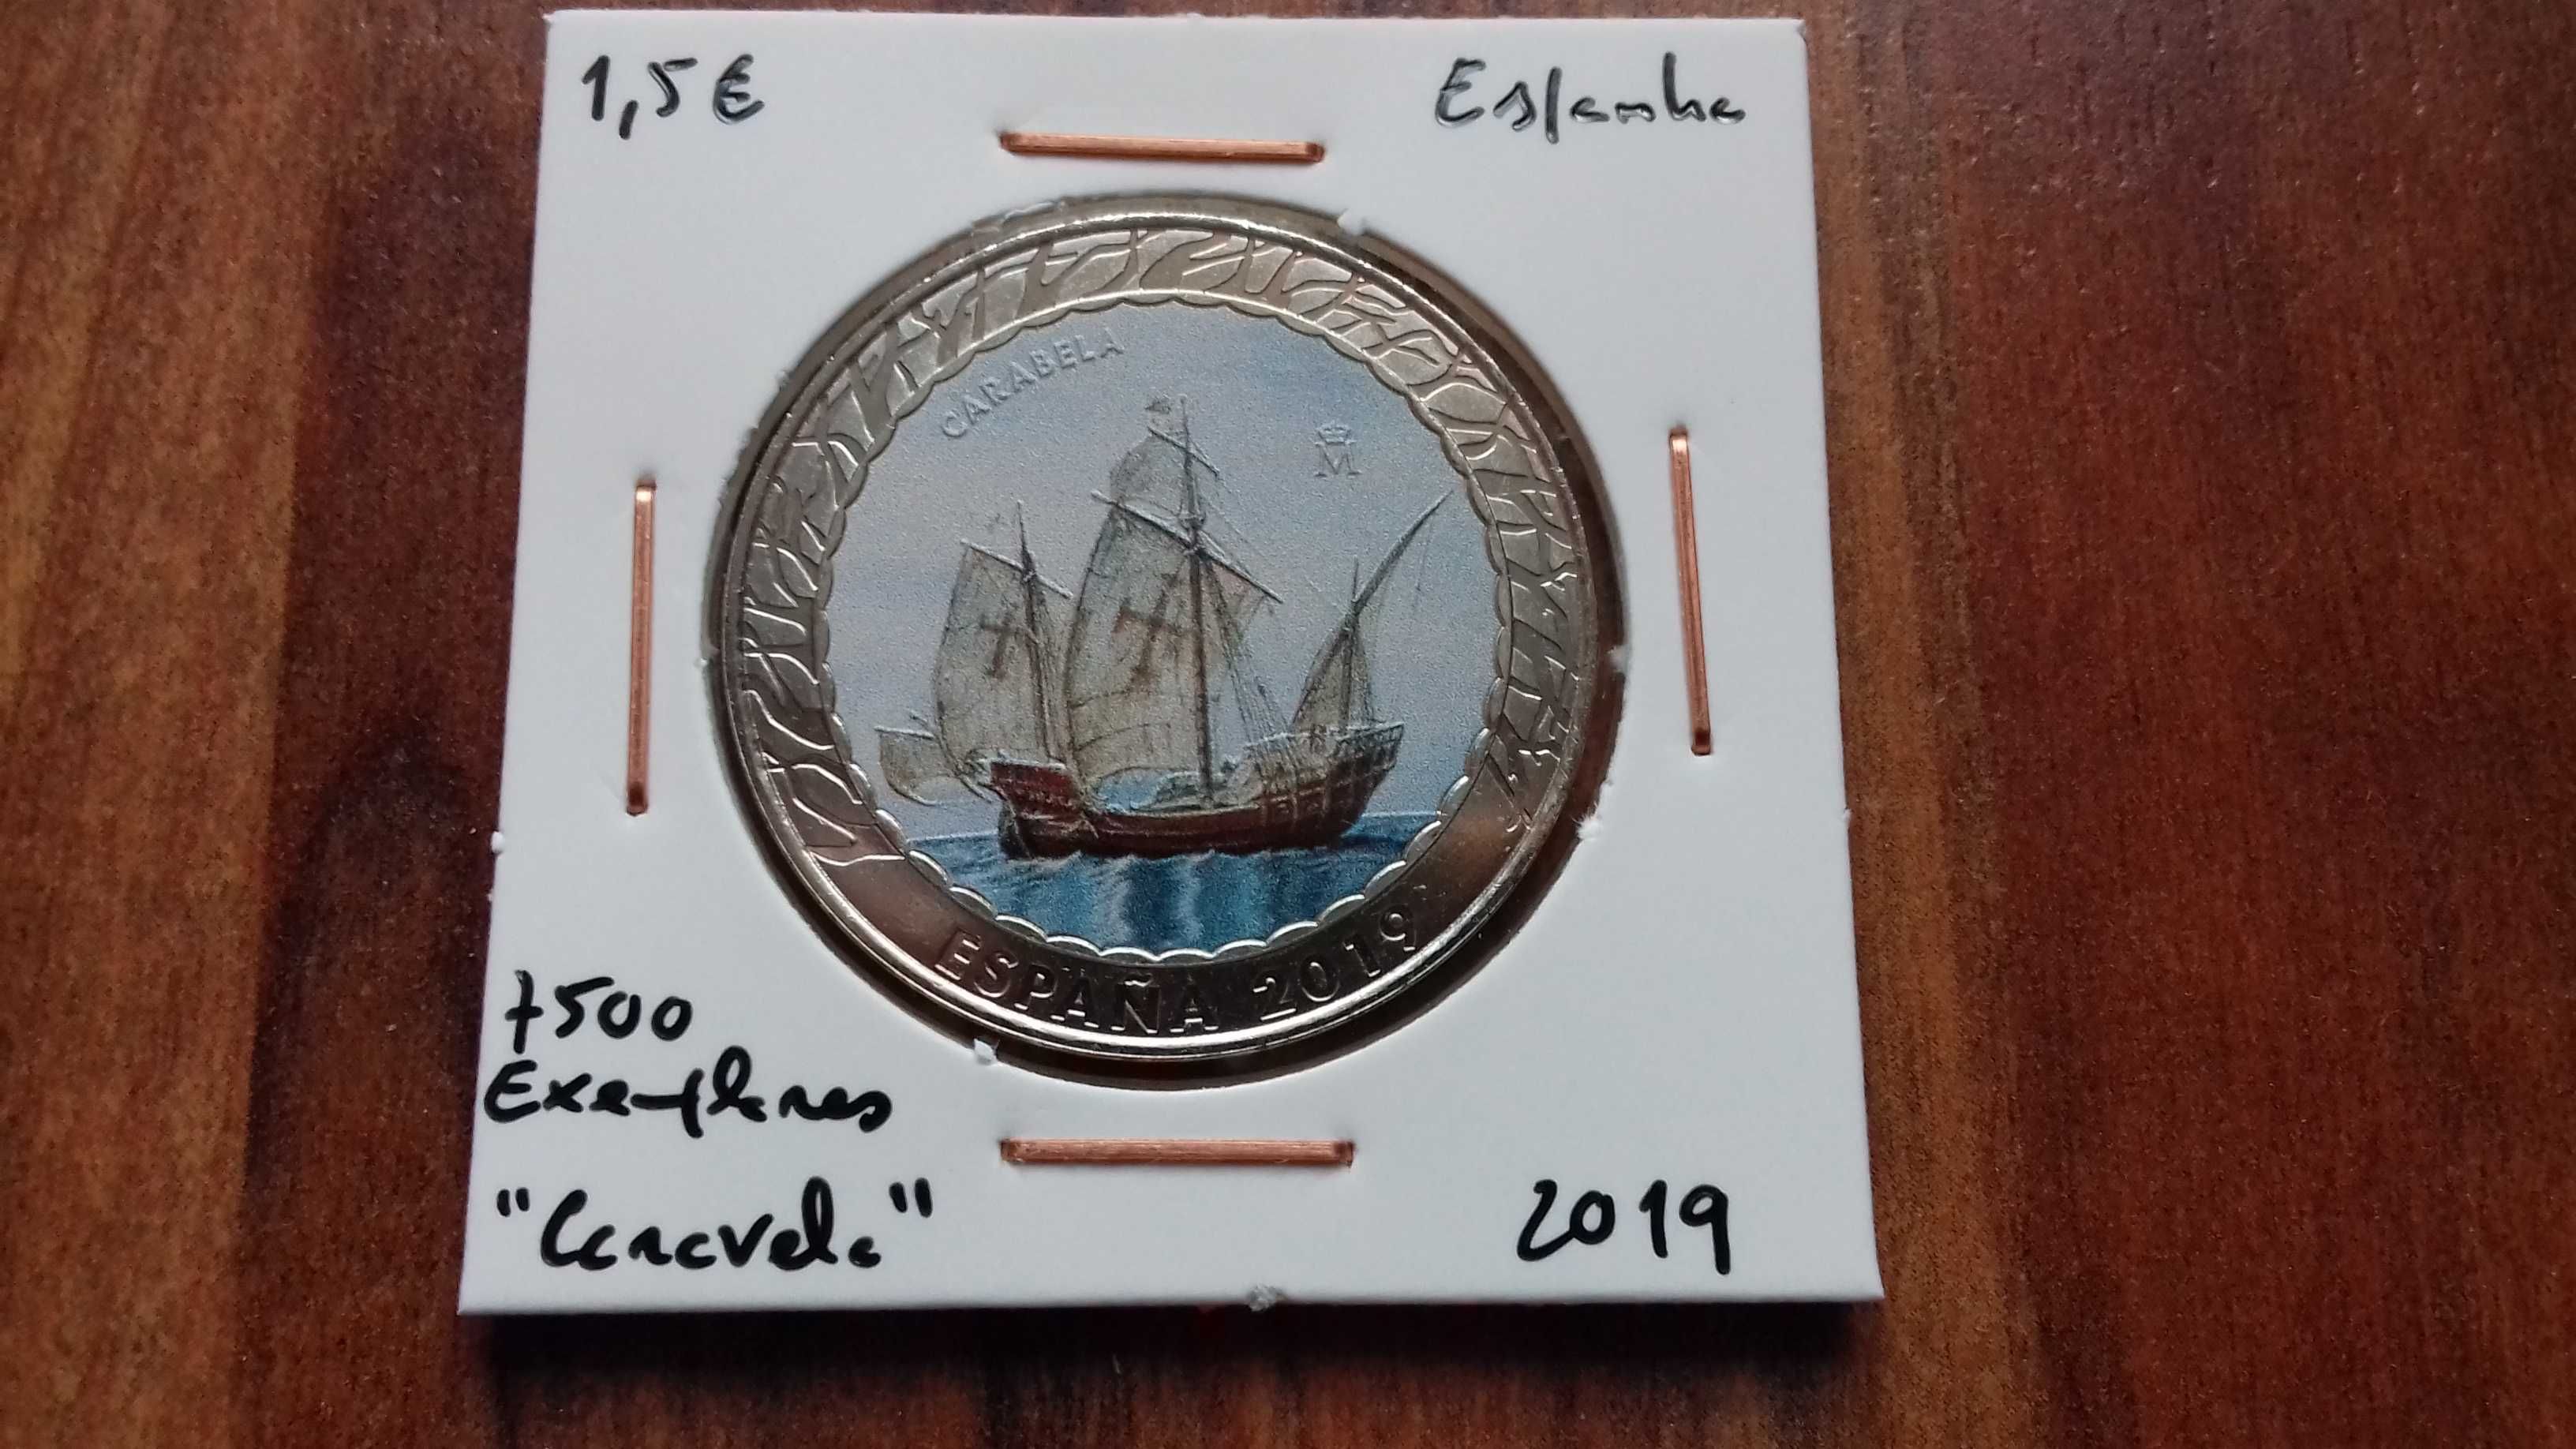 Moeda 1,5€ Espanha "Carabela" - 7500 Exemplares, 2019